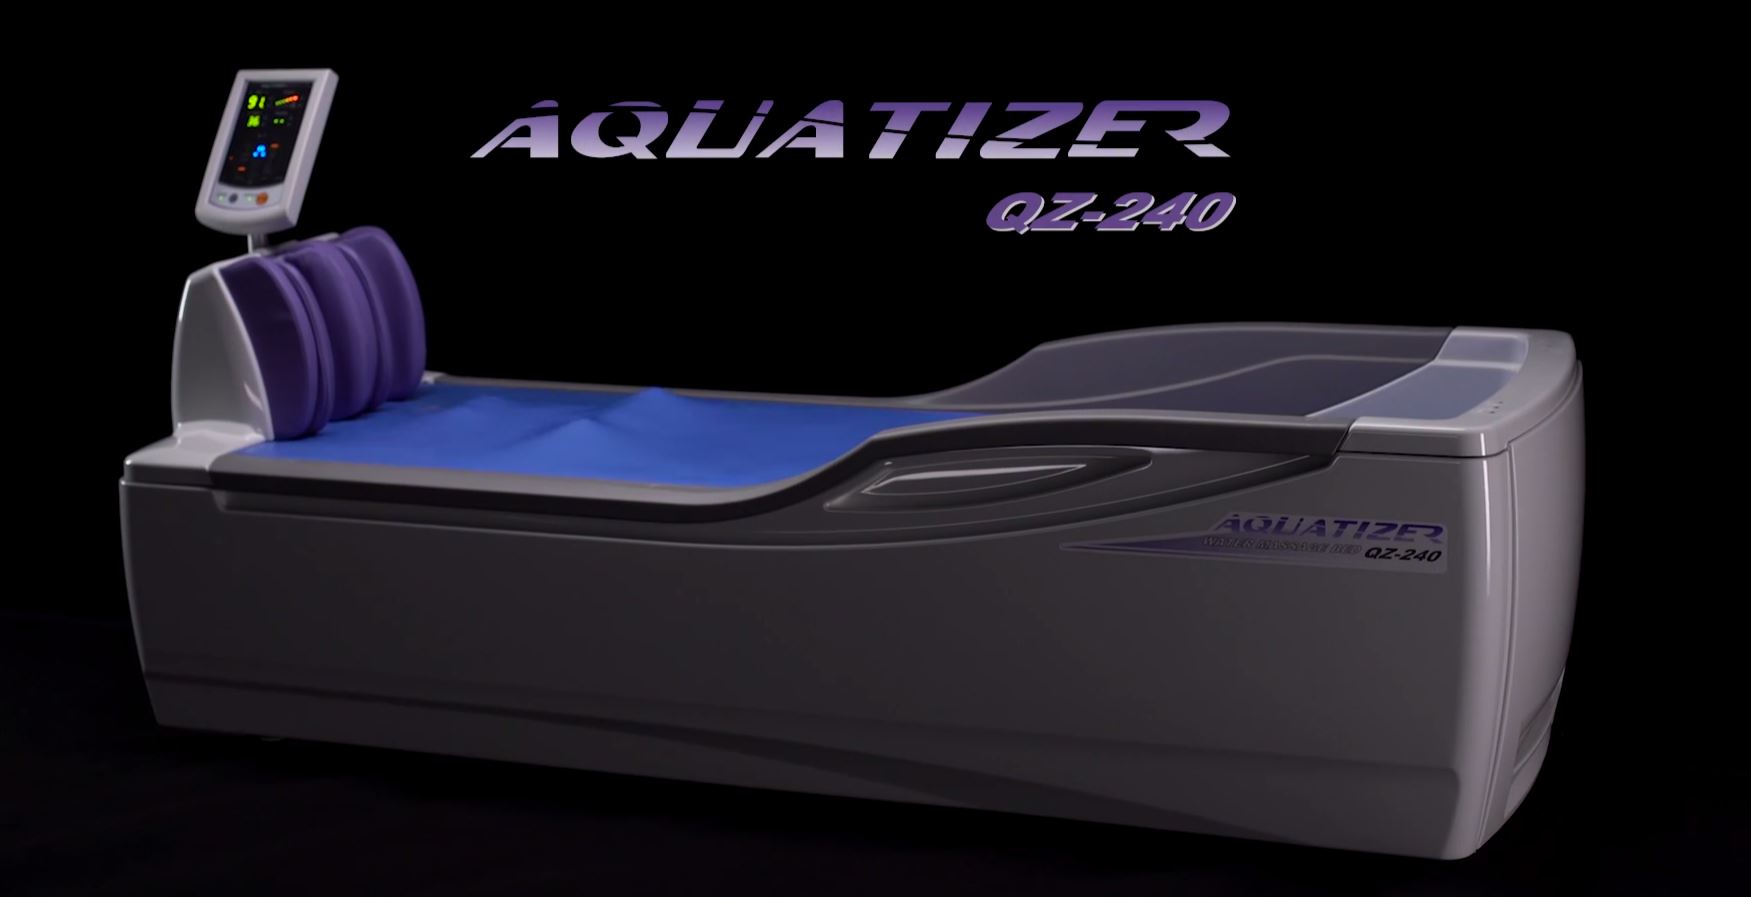 Aquatizer QZ-240 – Product characteristics | Minato EN